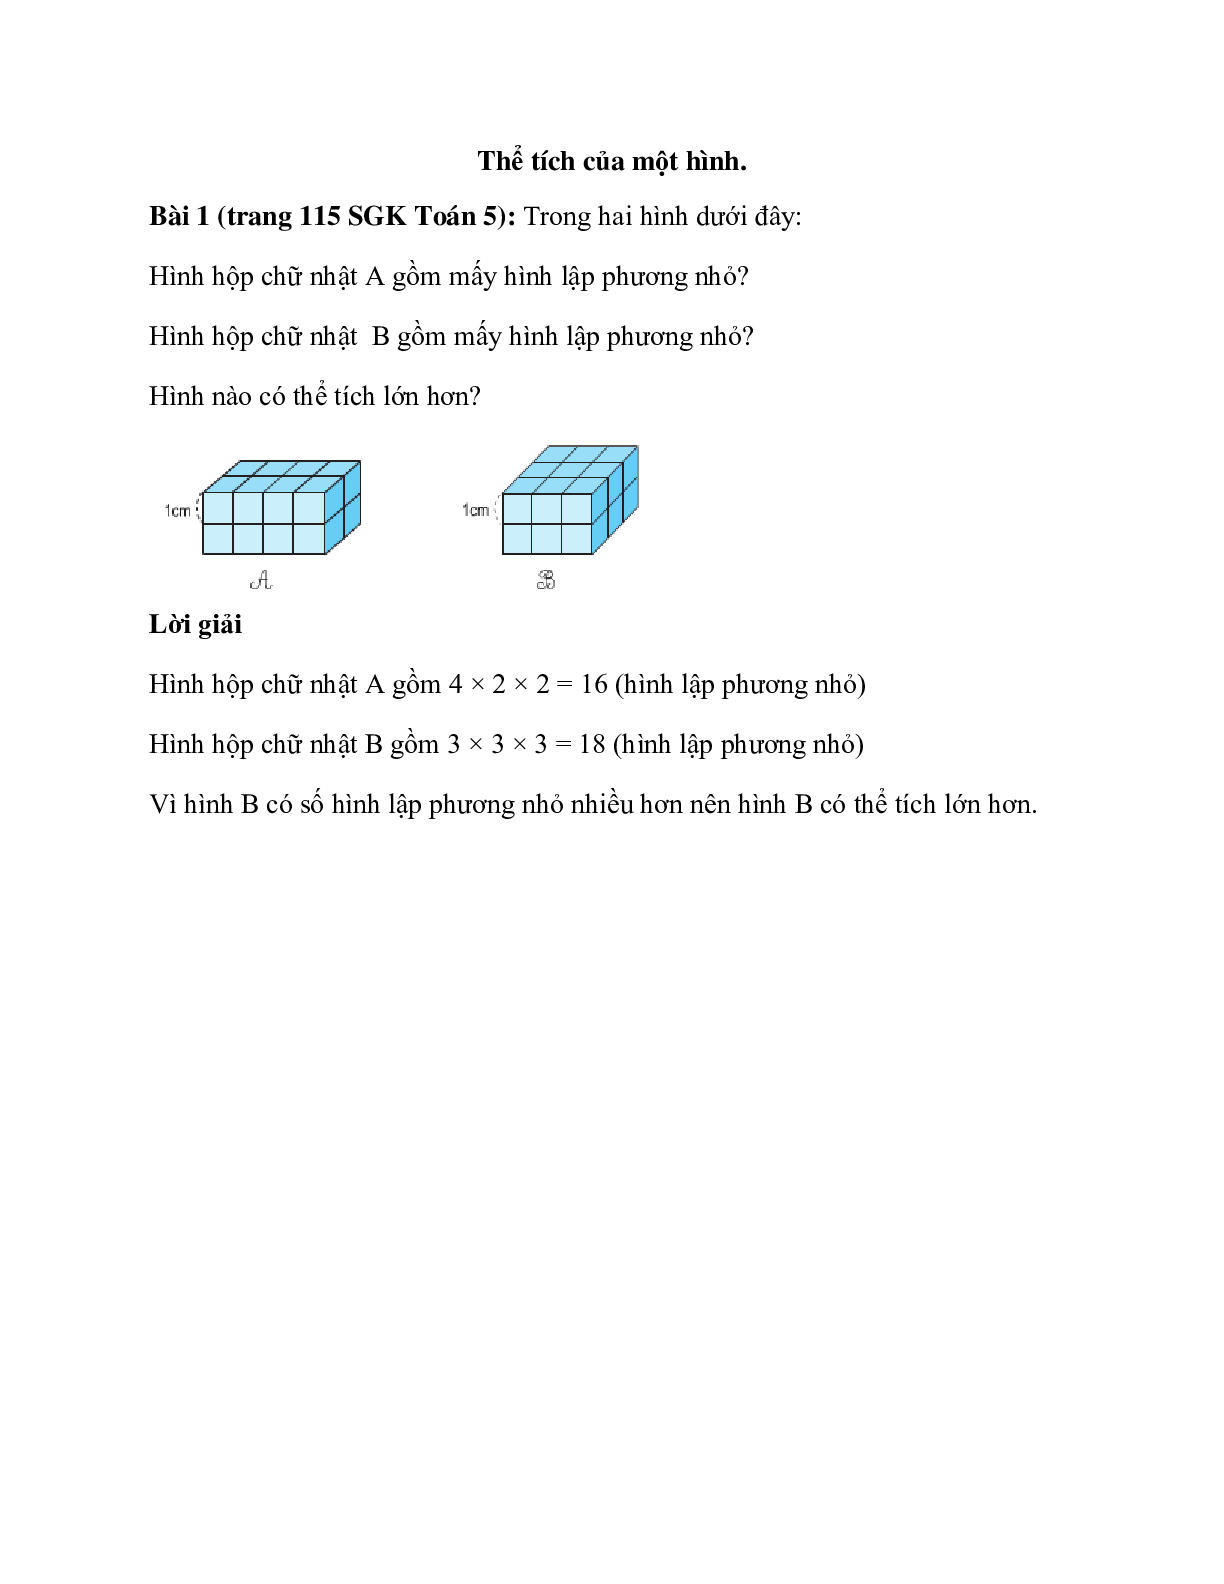 Trong hai hình dưới đây: Hình hộp chữ nhật A gồm mấy hình lập phương nhỏ (trang 1)